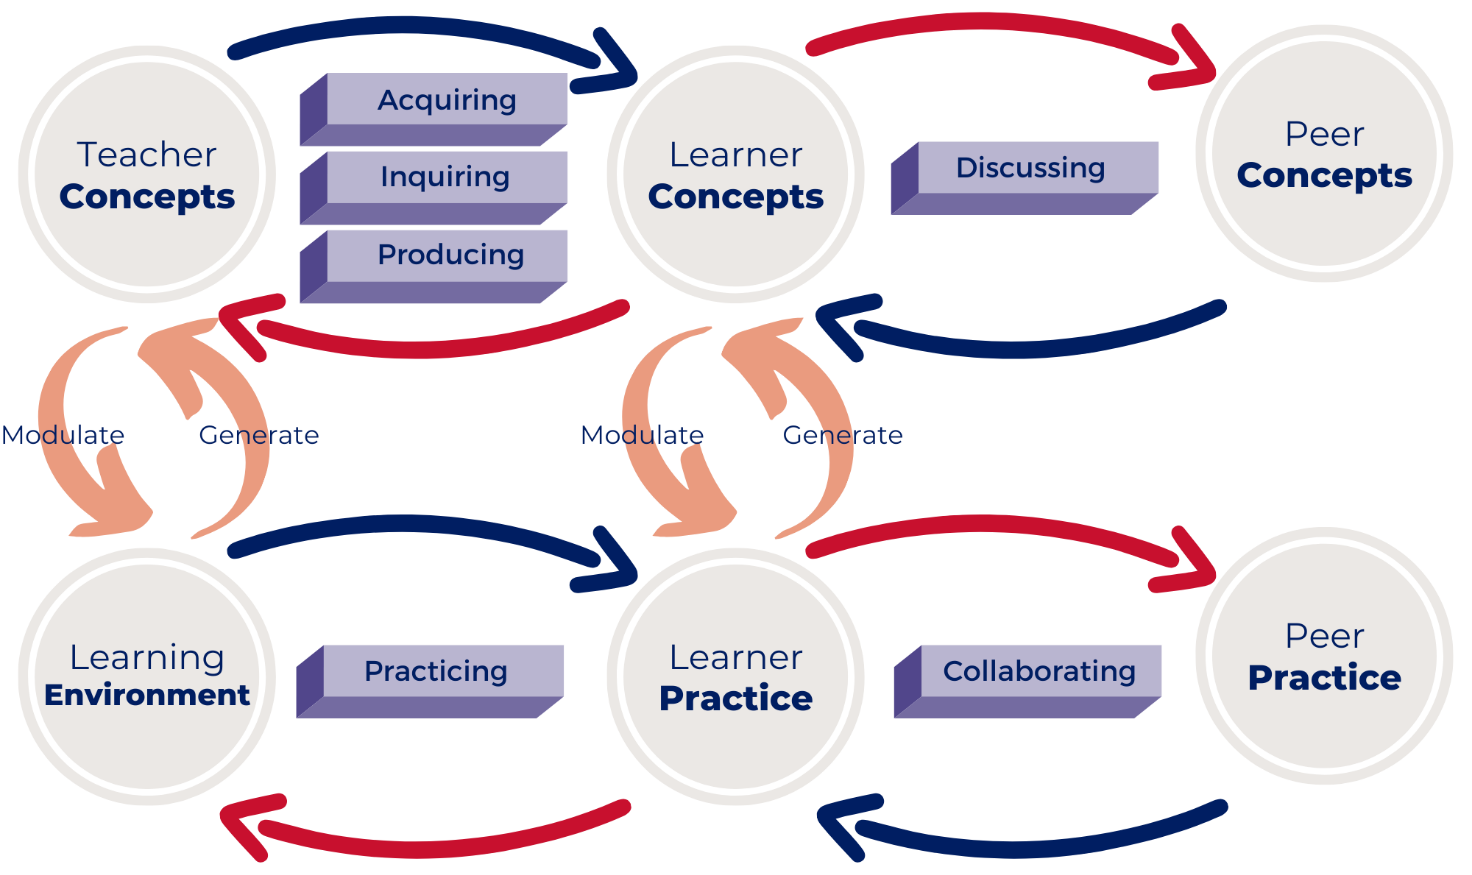 Diana Laurillard's Conversational Framework